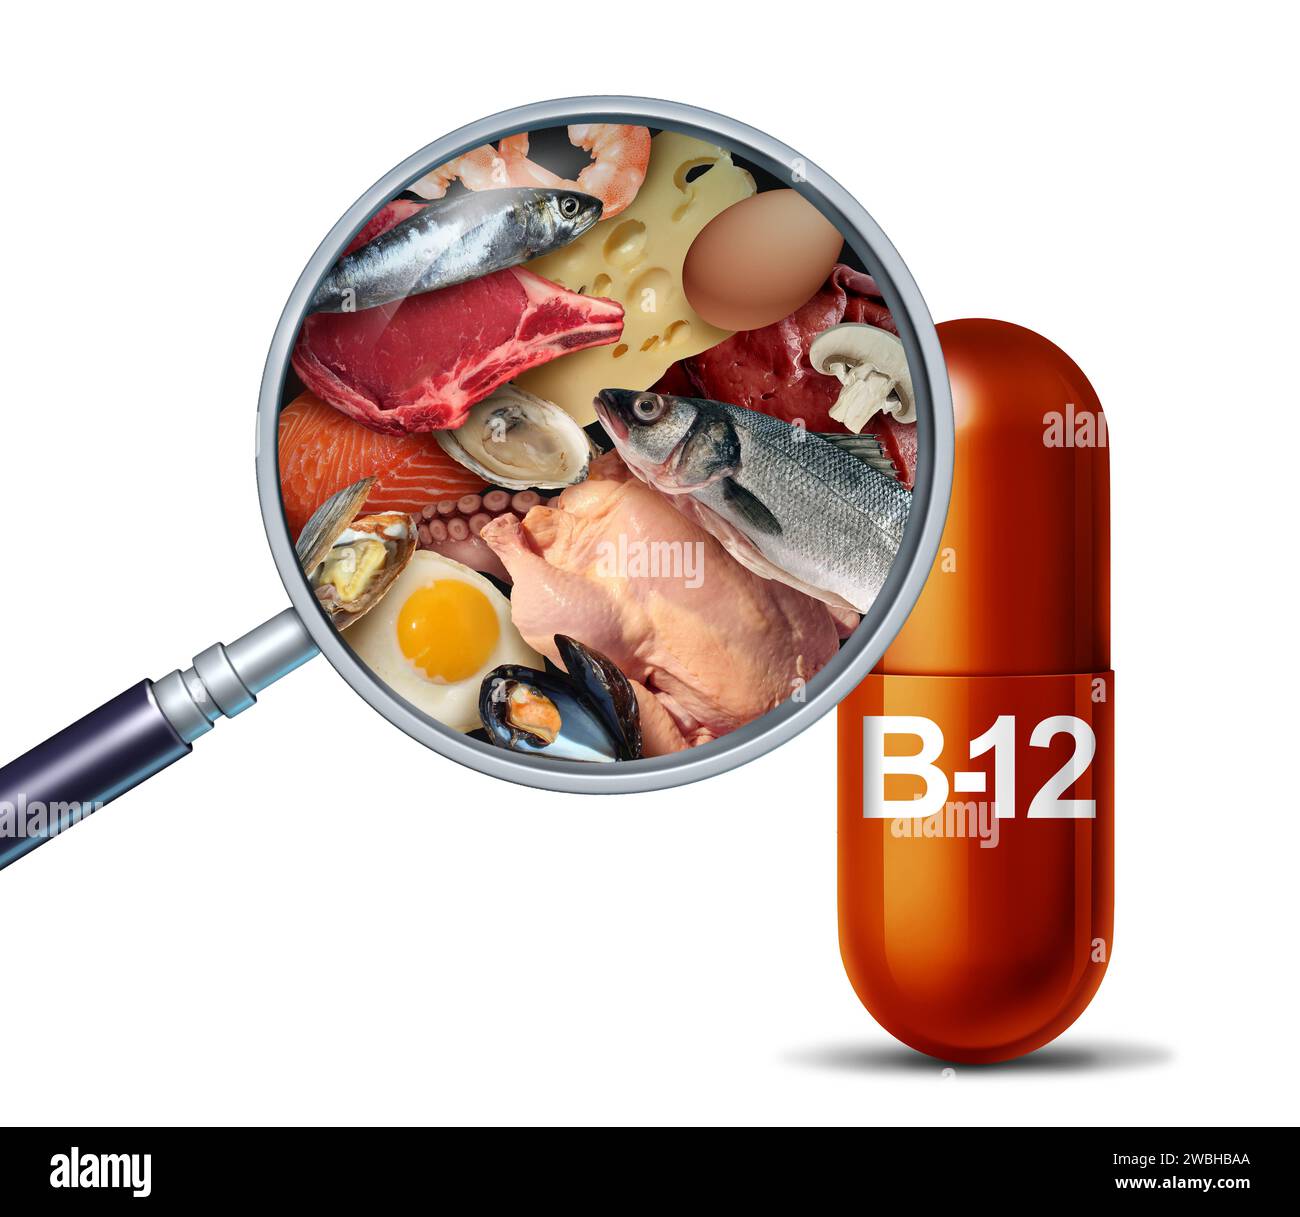 Supplément nutritionnel de source naturelle de vitamine B12 comme suppléments de pilule de cobalamine comme une capsule avec du foie de boeuf et des fruits de mer à l'intérieur d'une pilule nutritive comme un n Banque D'Images